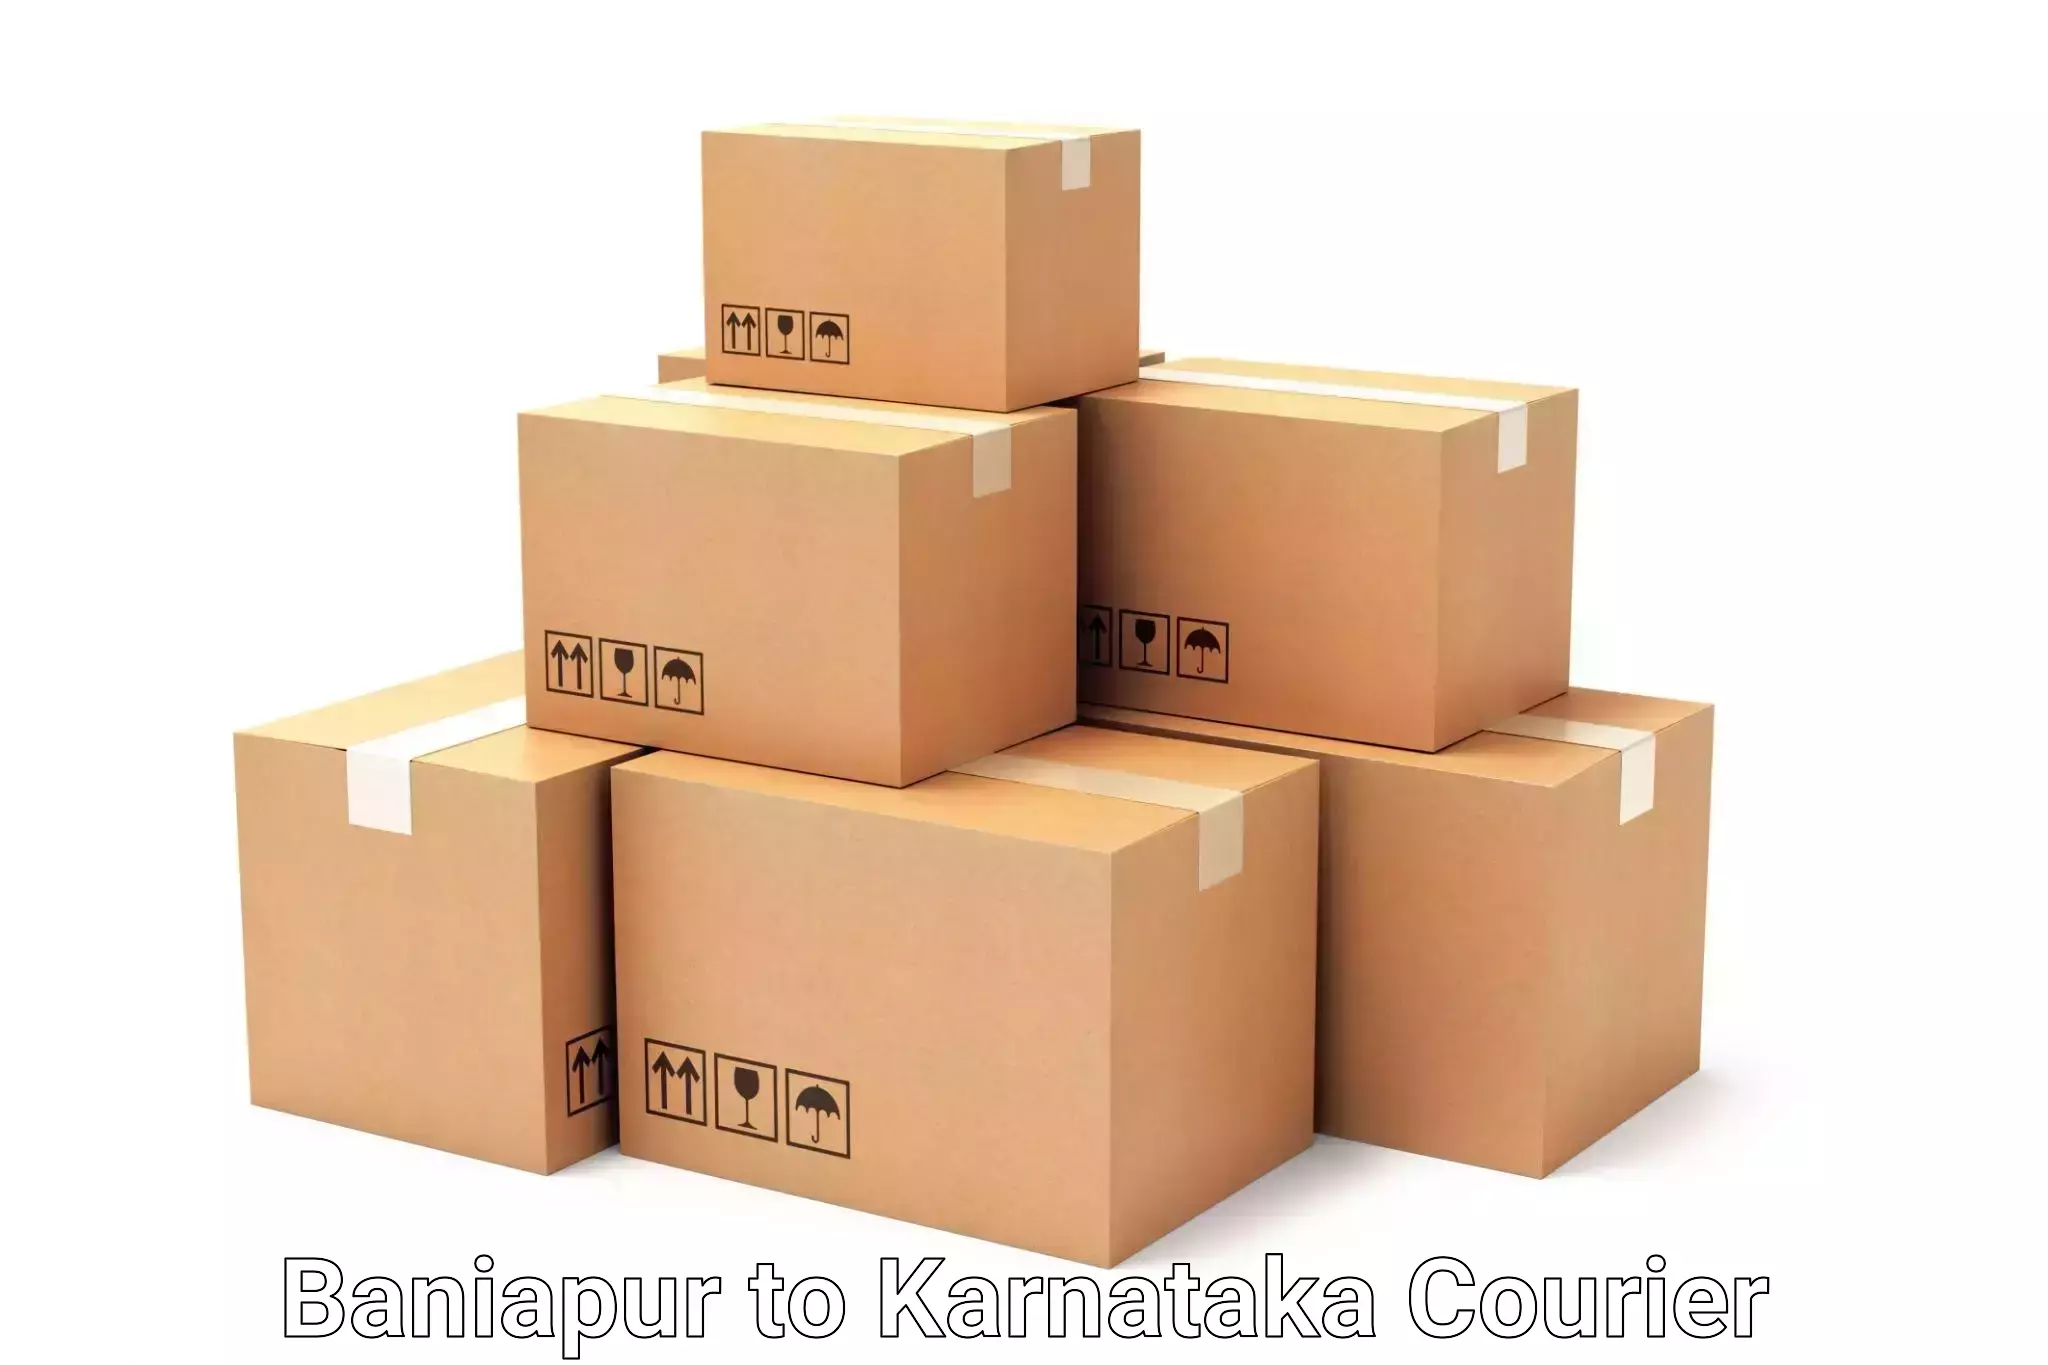 Artwork baggage courier Baniapur to Karnataka